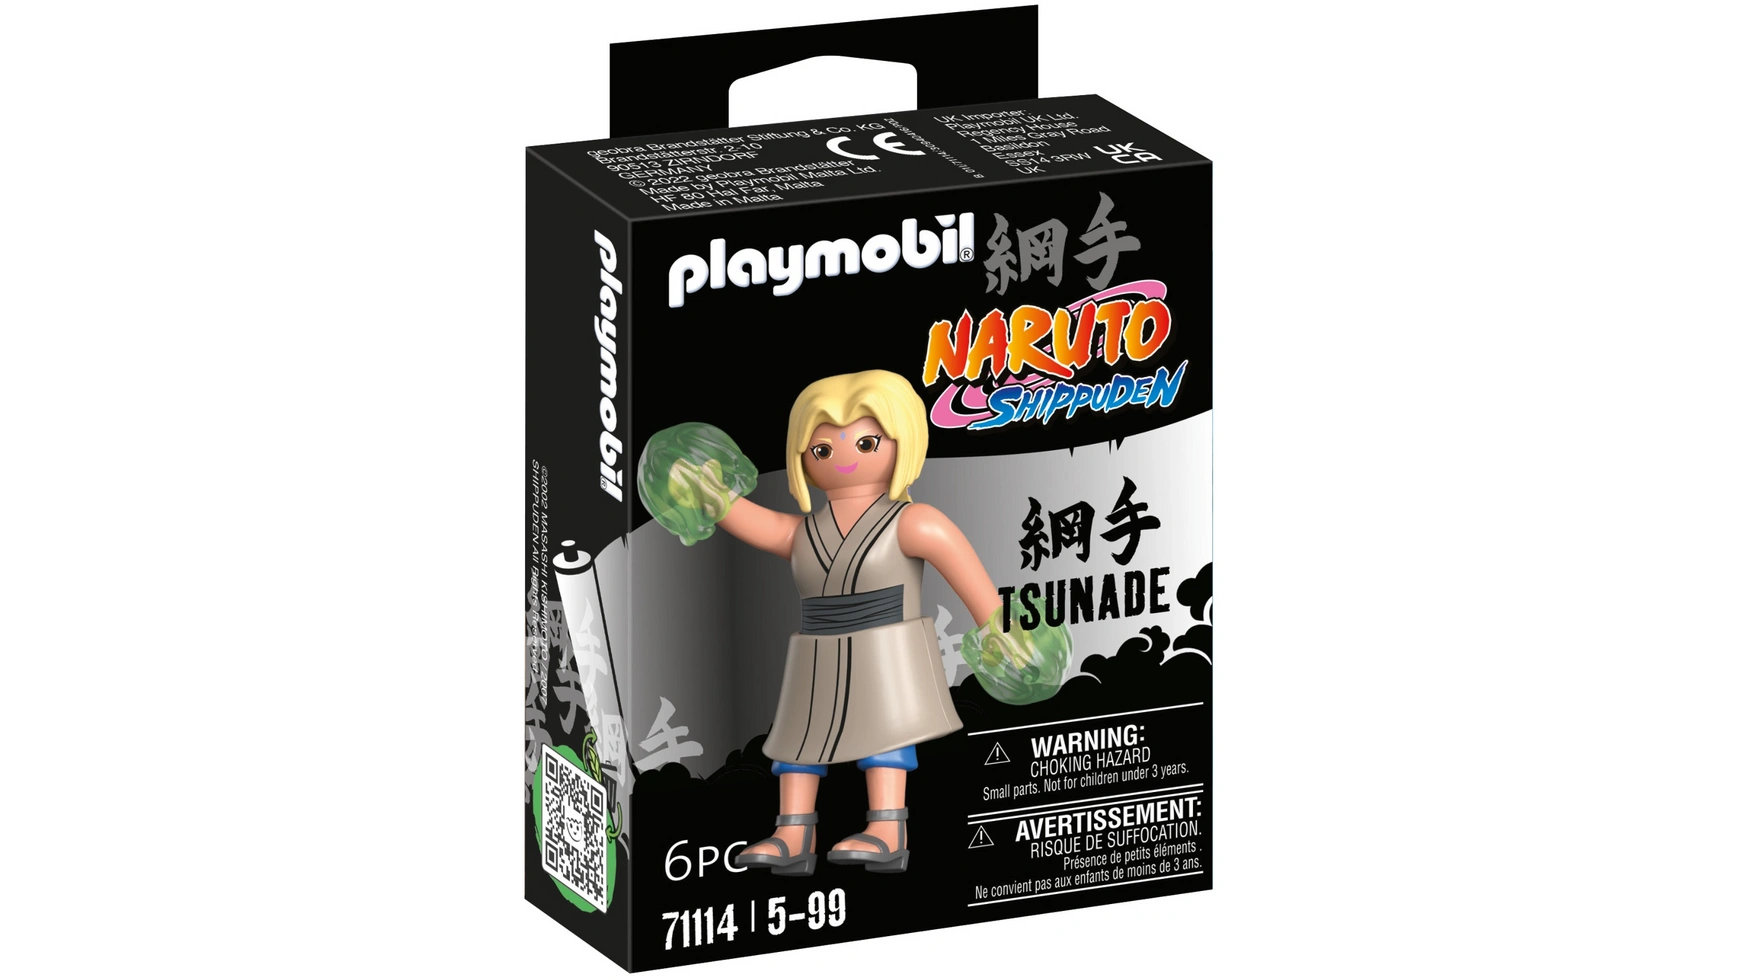 цена Наруто цунаде Playmobil